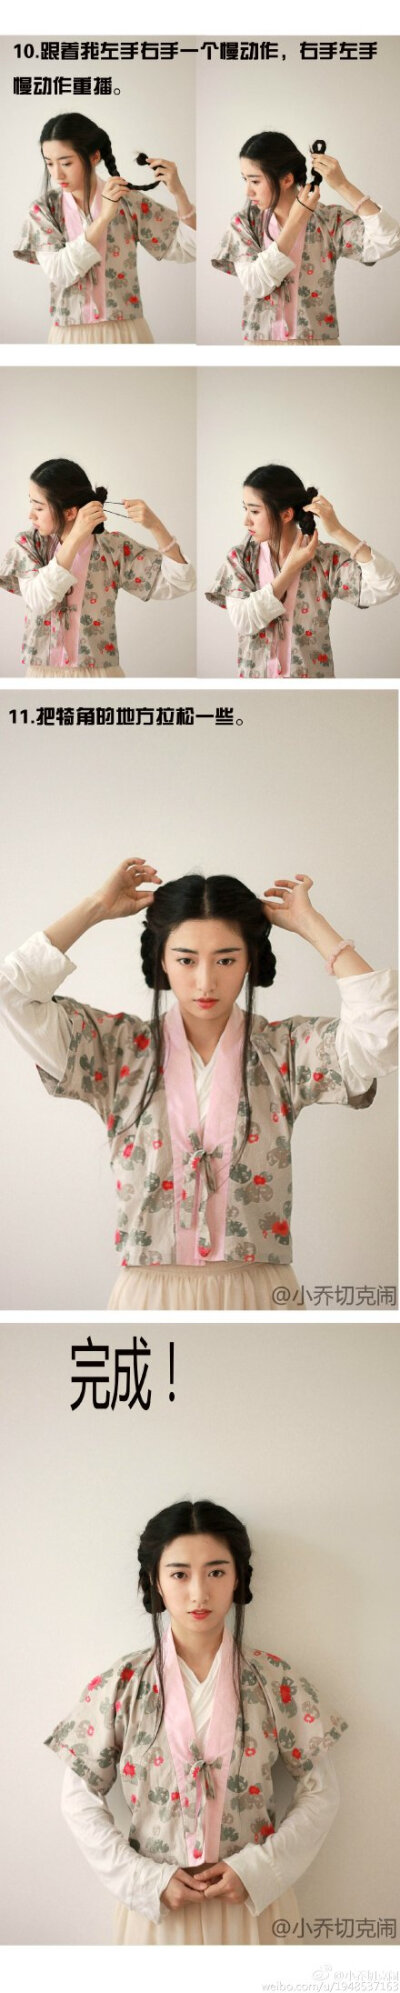 燕小吾  发布到  发型 图片评论 0条  收集   点赞  评论  古风发型 0